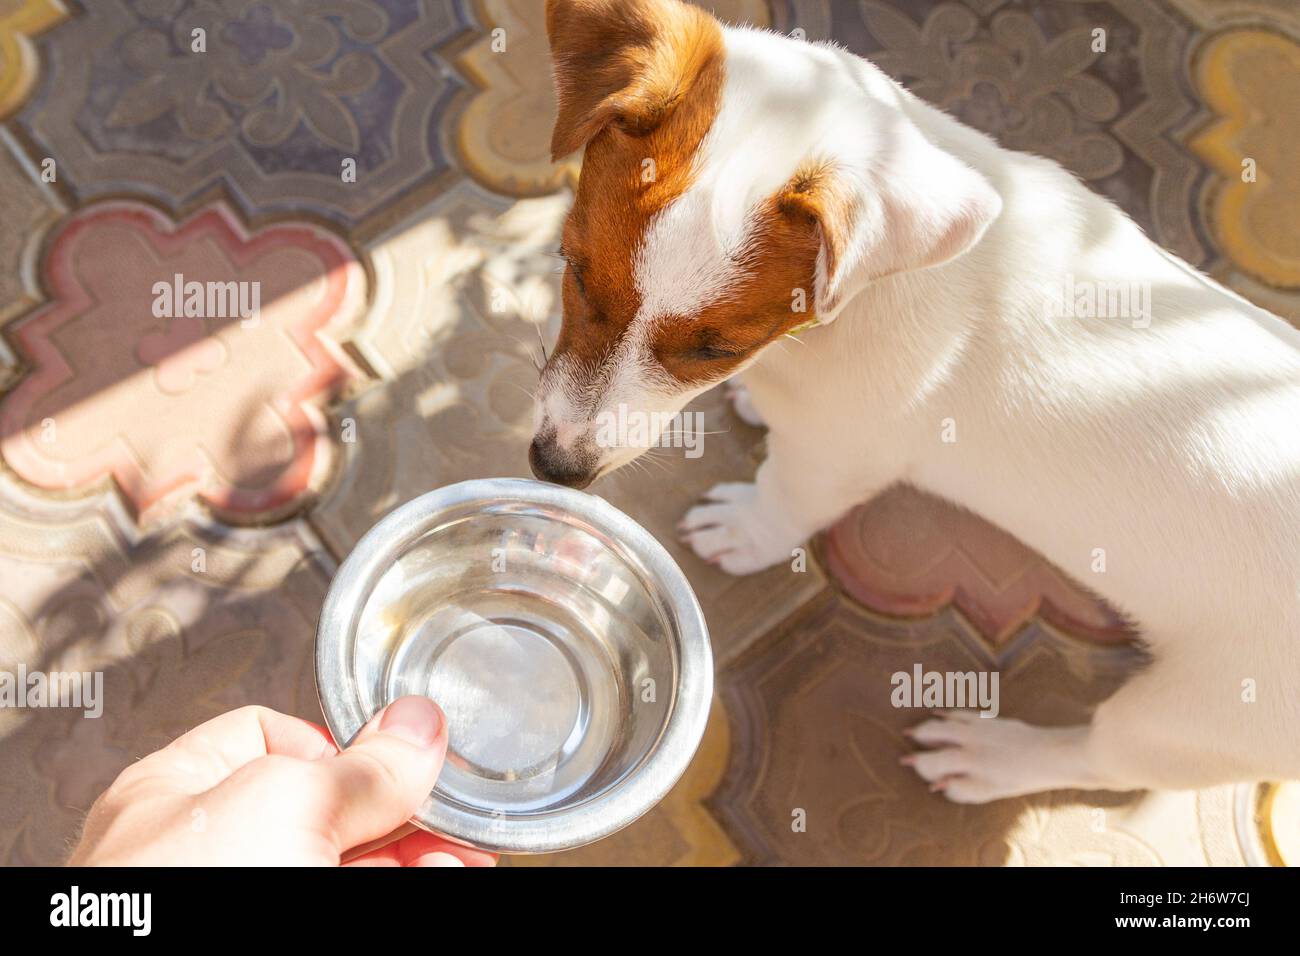 Vida doméstica con perro. Perro hambriento con ojos tristes está esperando a alimentarse. El perro hambriento o sediento se alimenta de un tazón de metal para obtener alimento o agua. Foto de stock